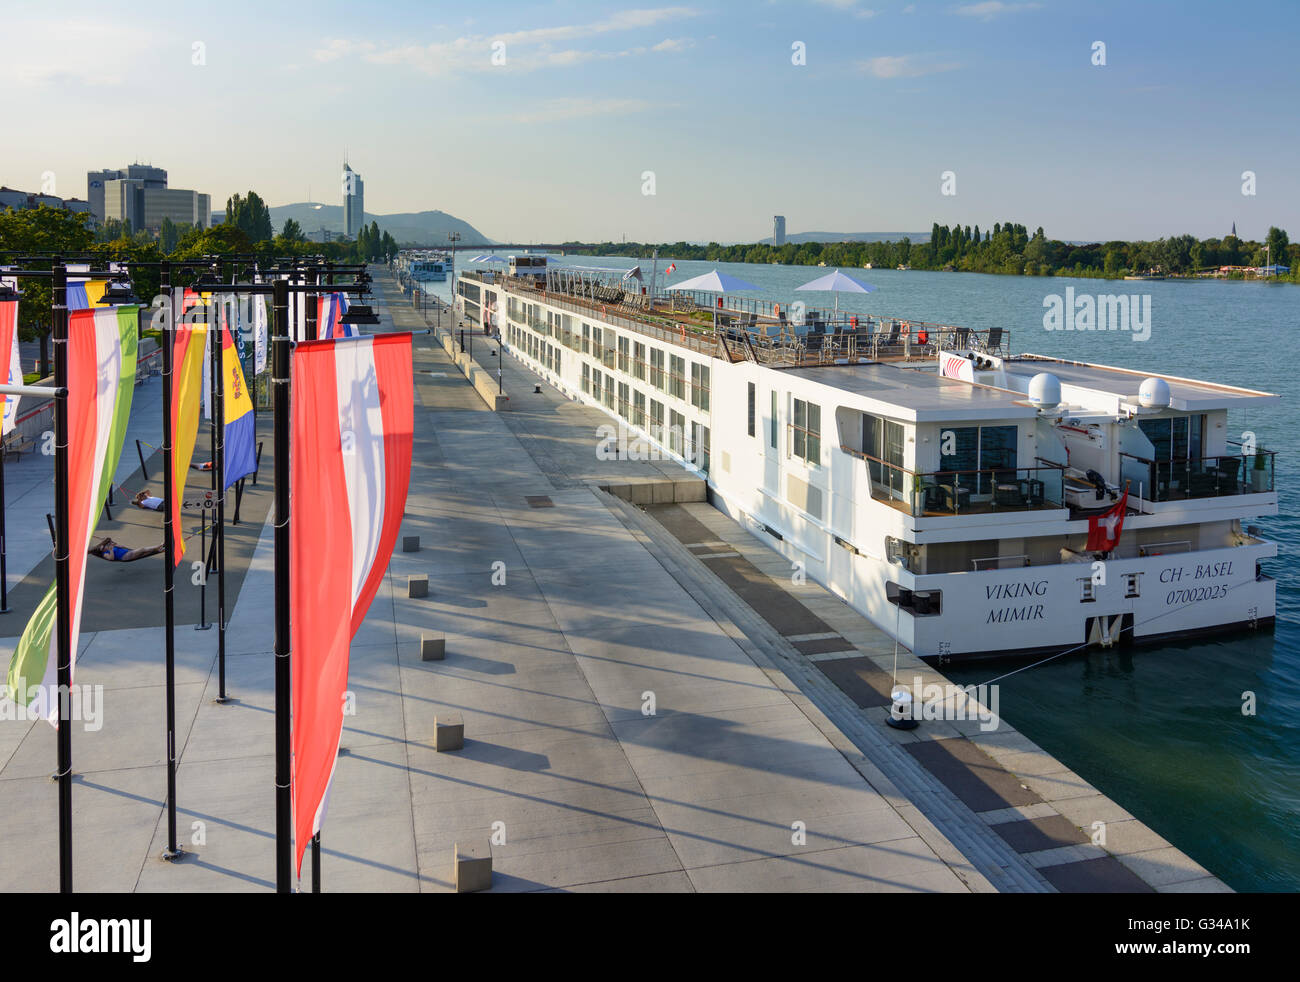 Cruceros por el Danubio, Austria, Wien, 02, Wien, Viena. Foto de stock